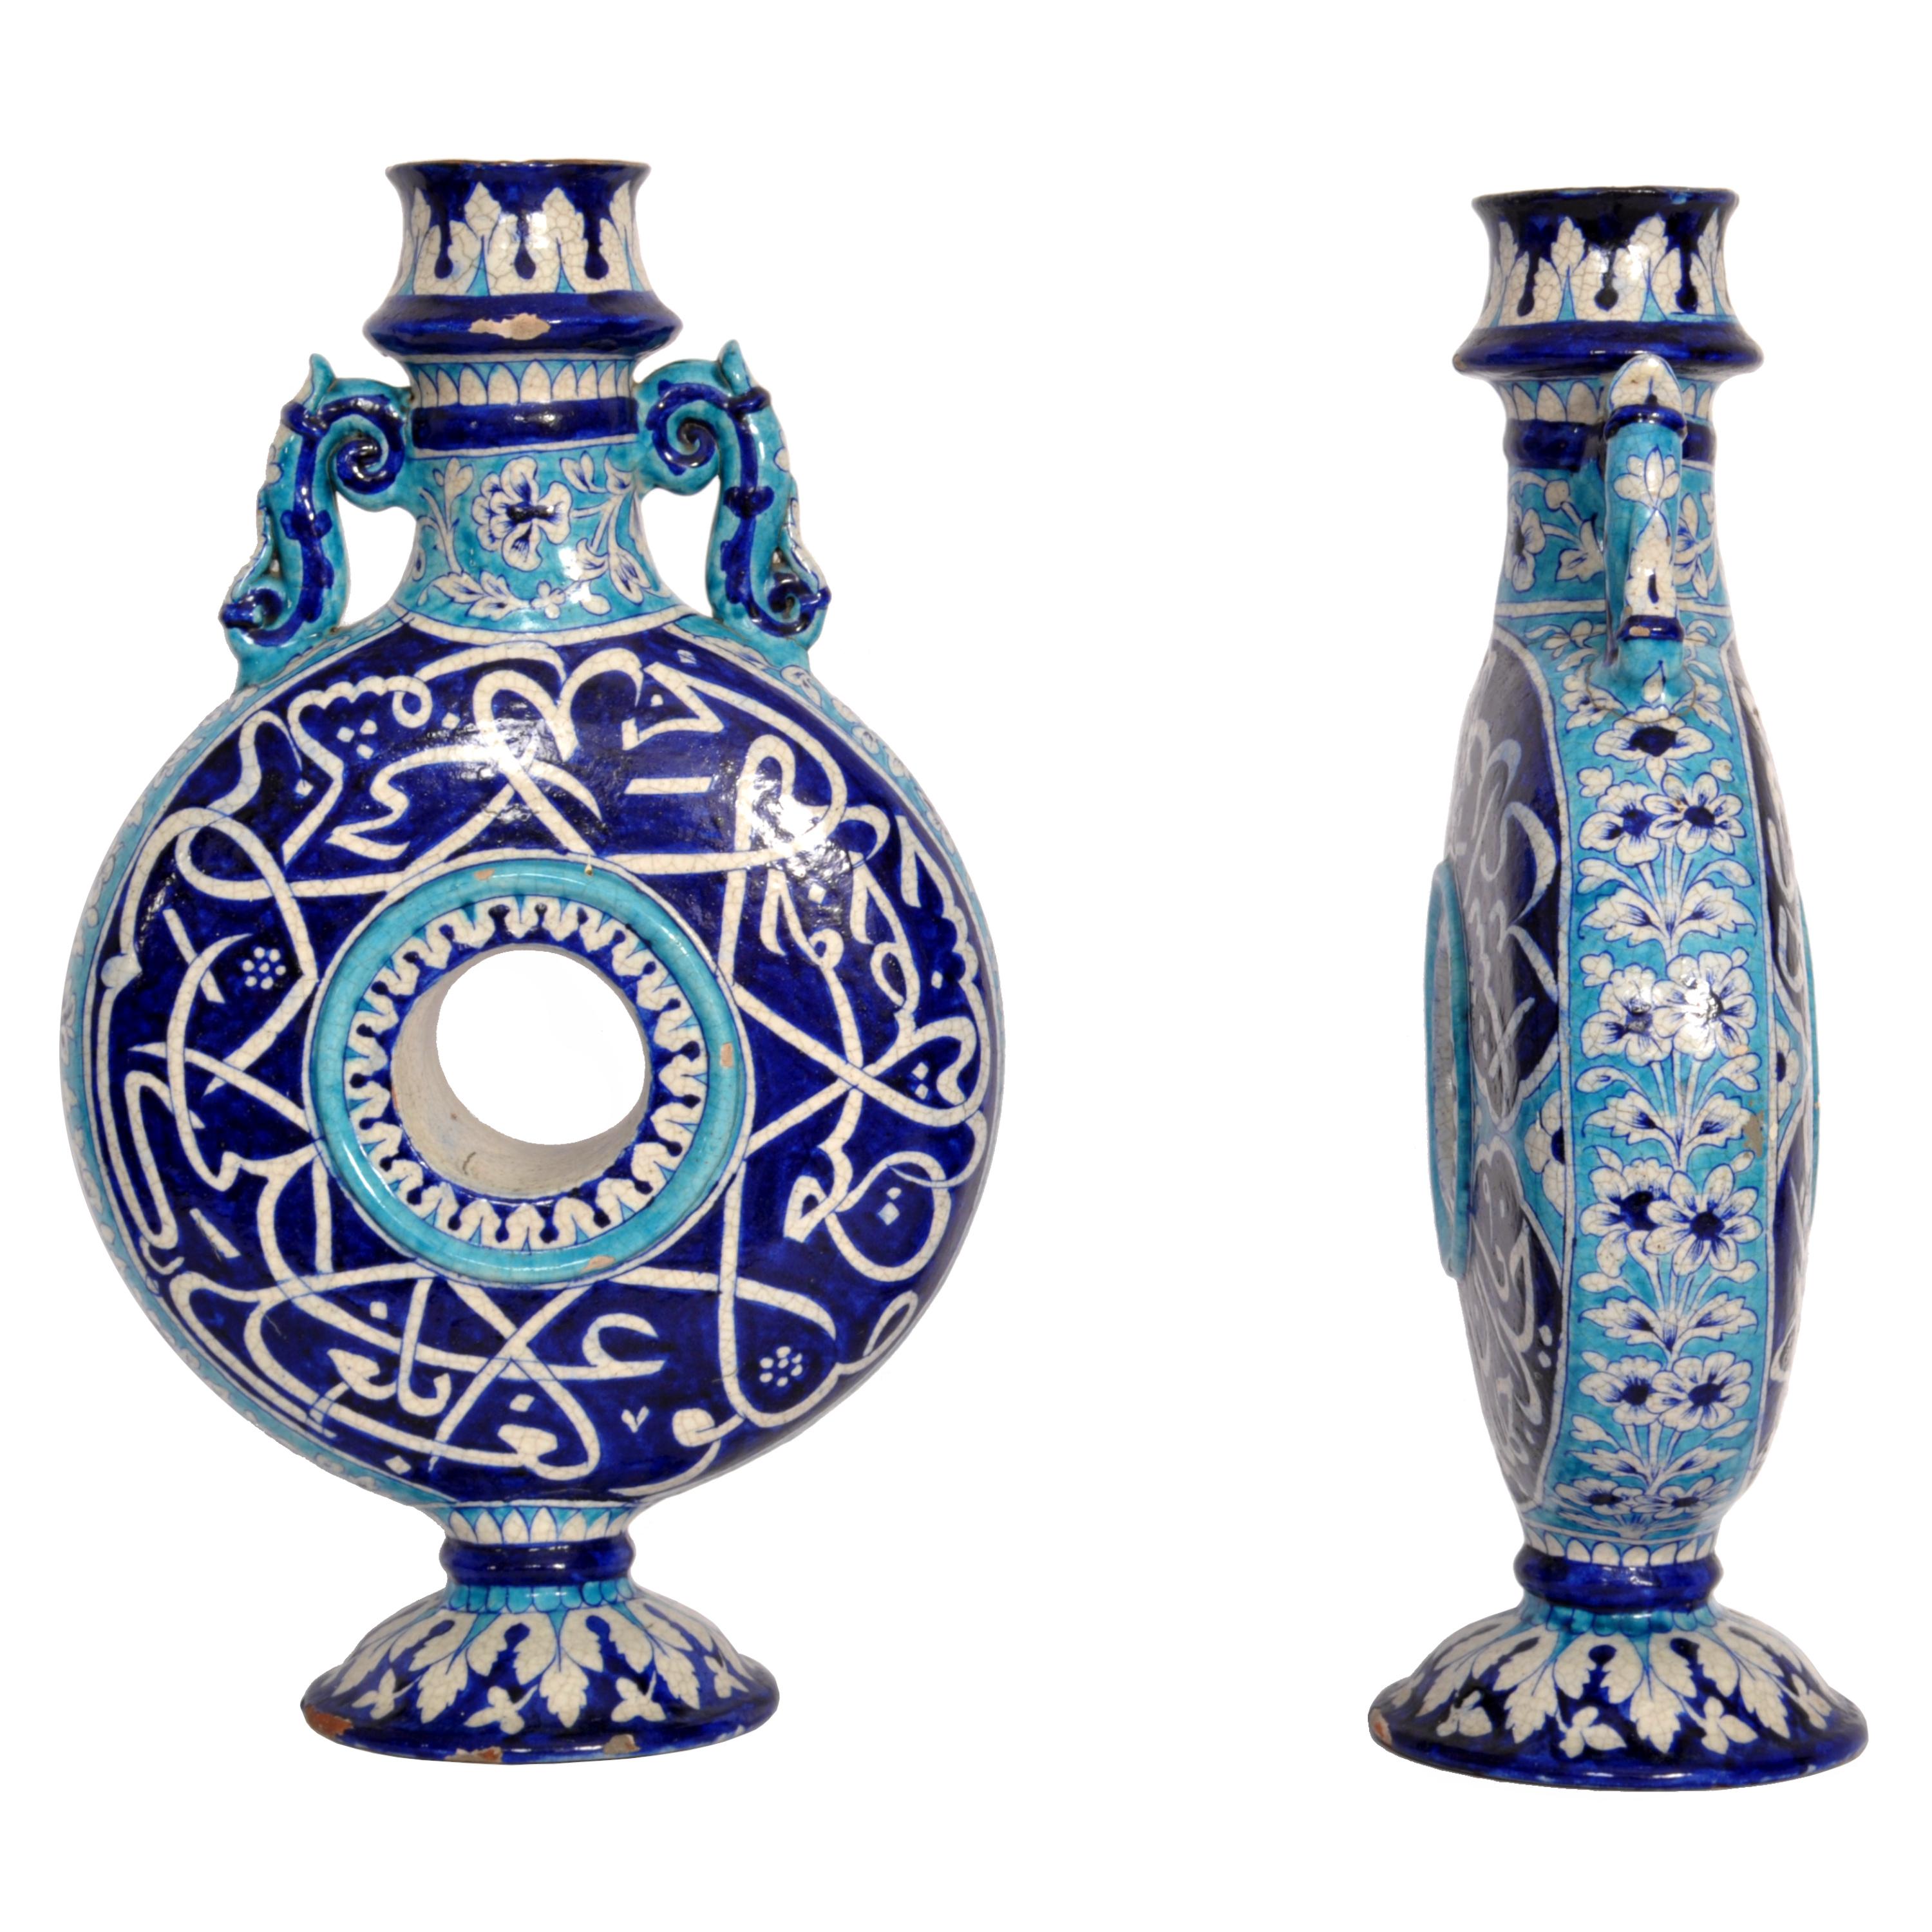 Rare paire de grandes flacons de lune en poterie islamique de Multan du XIXe siècle, Inde, province de Sindh (aujourd'hui Pakistan occidental), vers 1850.
Les flacons sont décorés de glaçures bleues, blanches et turquoises, le sommet étant orné de